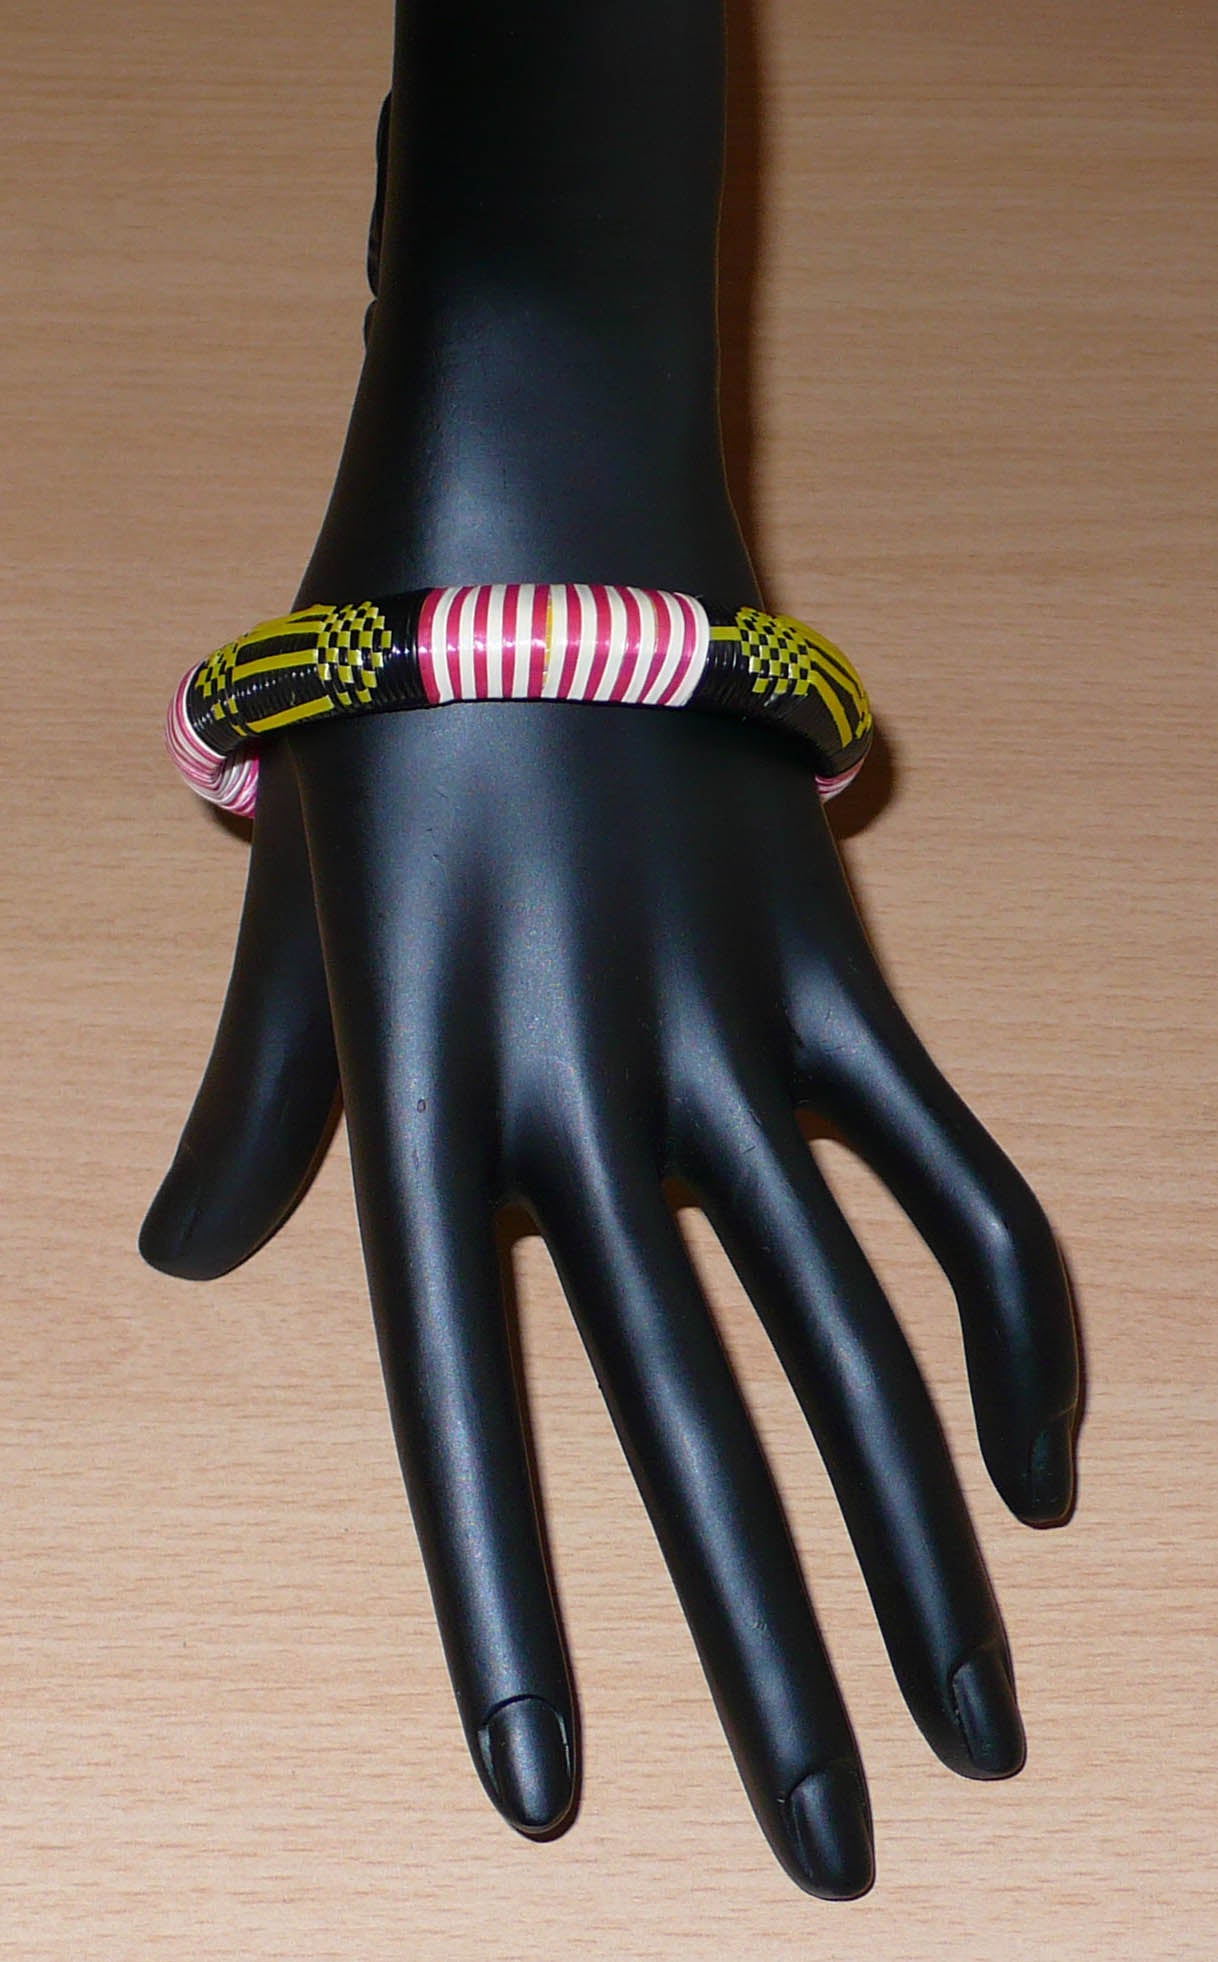 Bracelet africain eco-friendly à motifs ethniques tissé à partir de fines bandes de plastique recyclé noir, jaune, rouge et blanc.